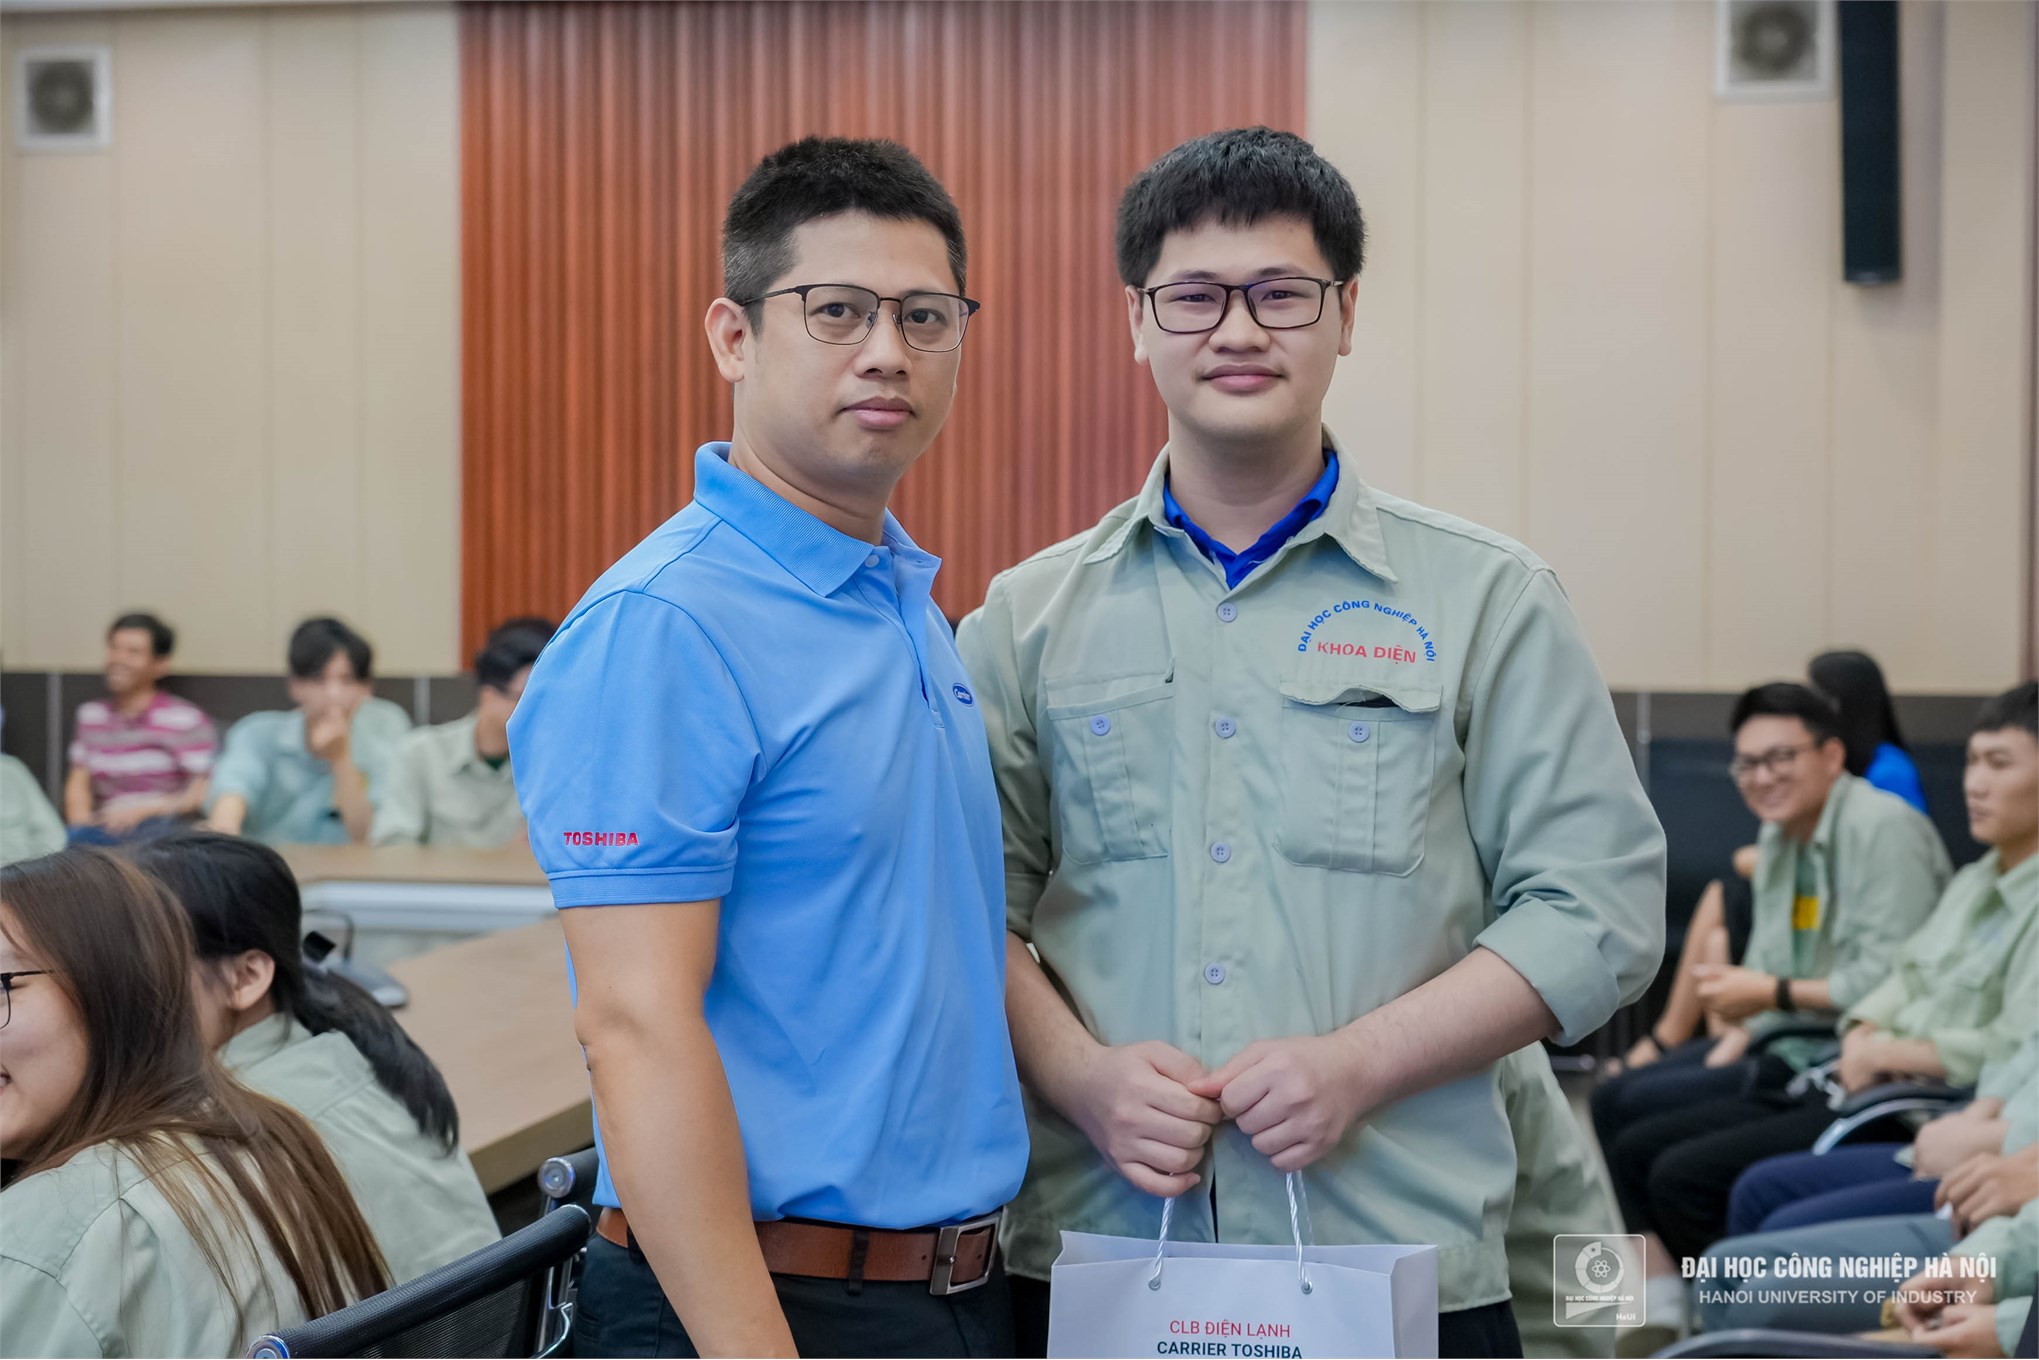 Đại học Công nghiệp Hà Nội nhận bàn giao thiết bị tài trợ từ Công ty TNHH điều hòa không khí Carrier Việt Nam 